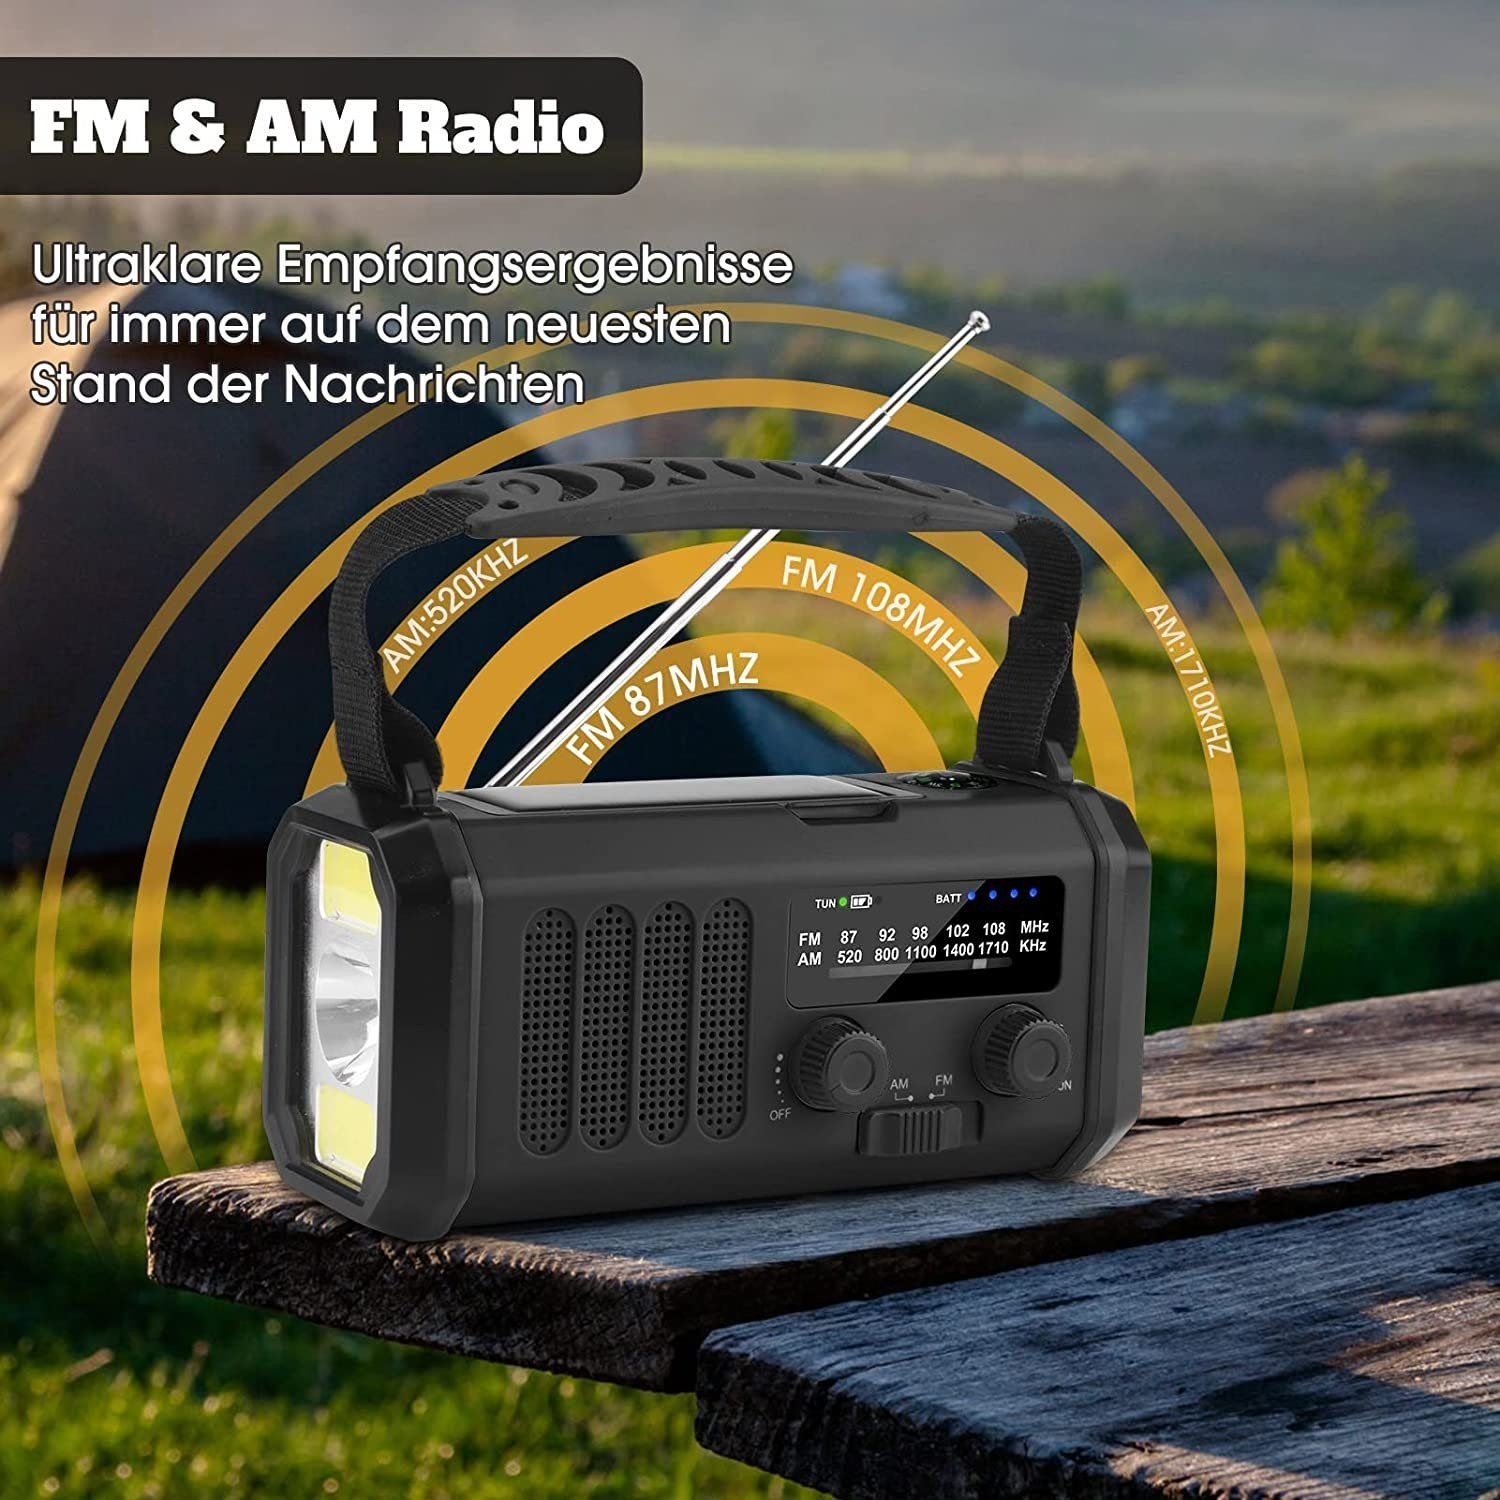 (DAB) Digitalradio Modi (3 Radio, Notfallradio, 10000mAh Radio Alarm, Leselampe, LED Tragbar Solar Kompass) LED SOS Mutoy Kurbelradio, AM/FM Taschenlampe,